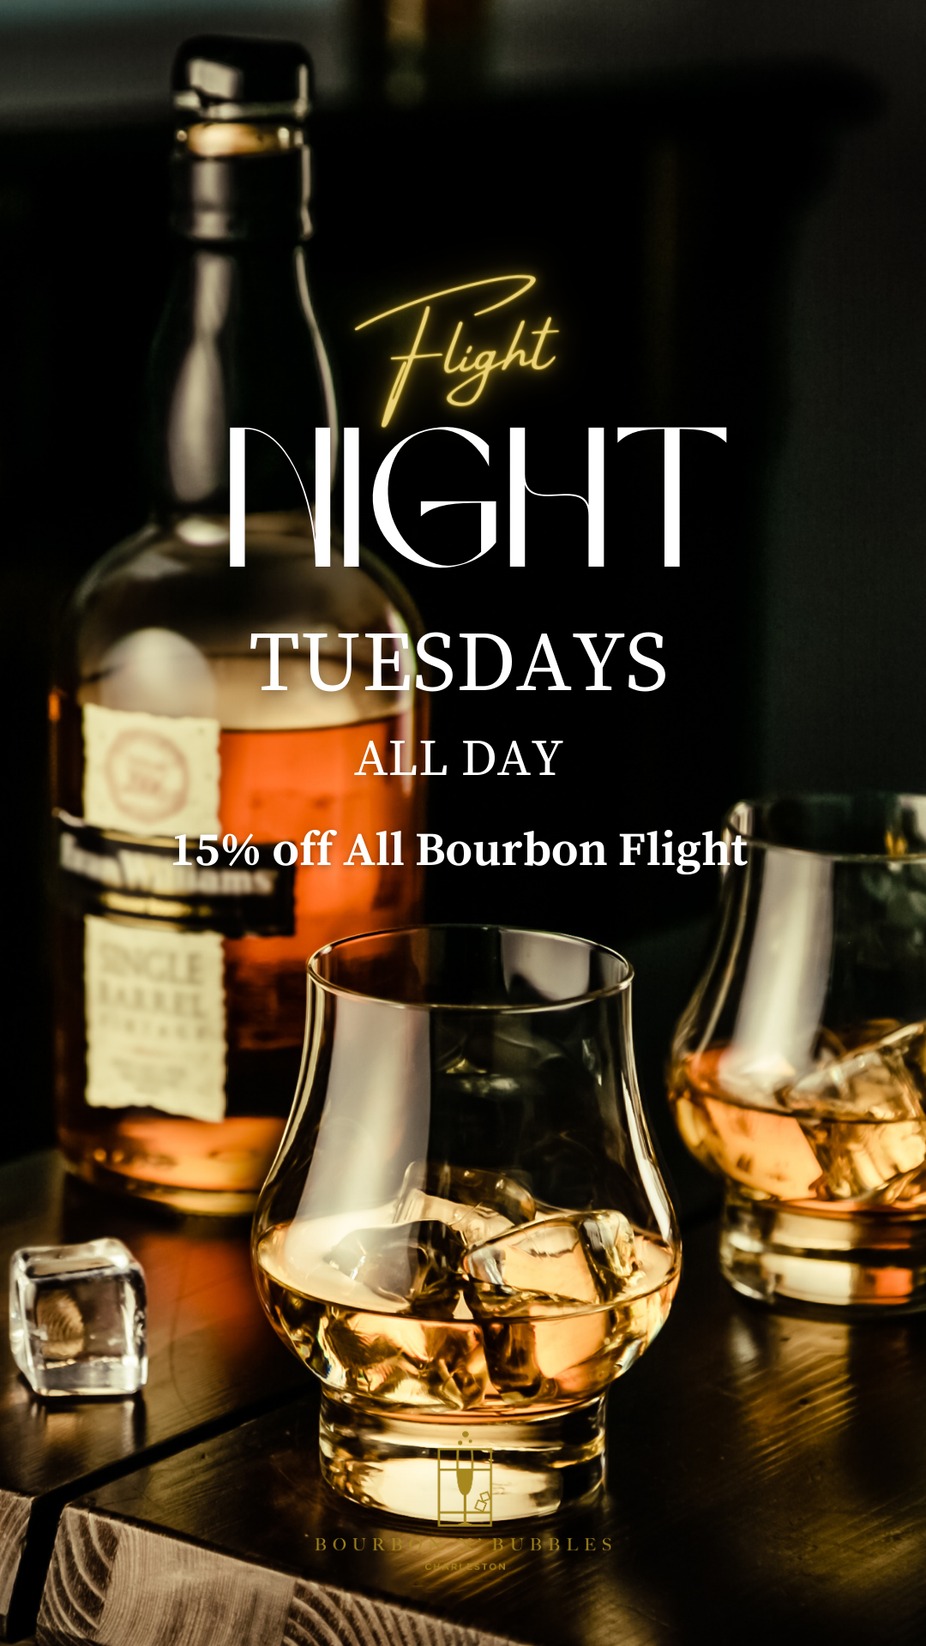 Flight Night Tuesdays event photo